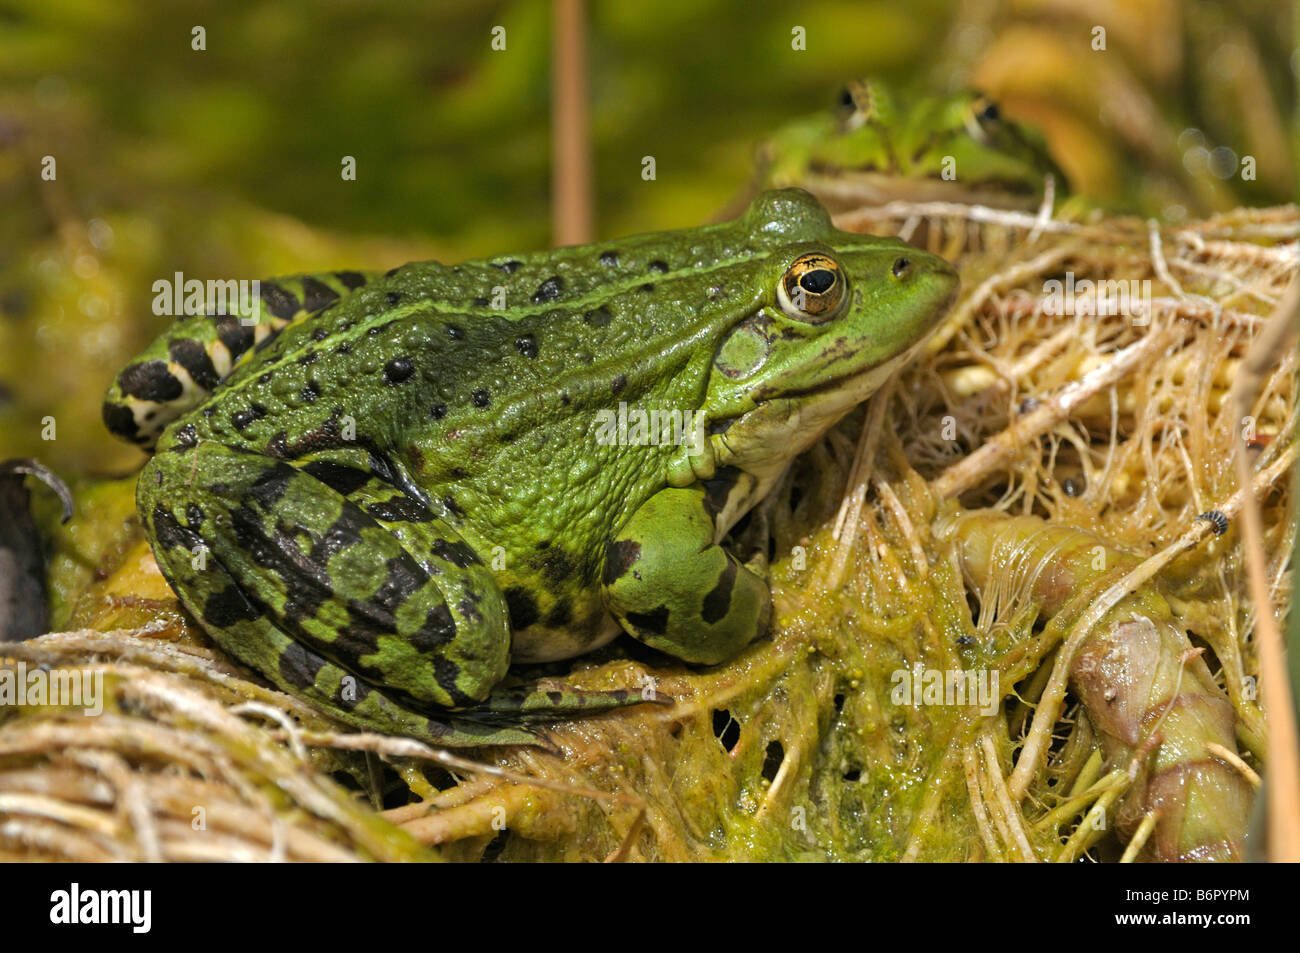 European Edible Frog (Rana esculenta), taking a sunbath Stock Photo